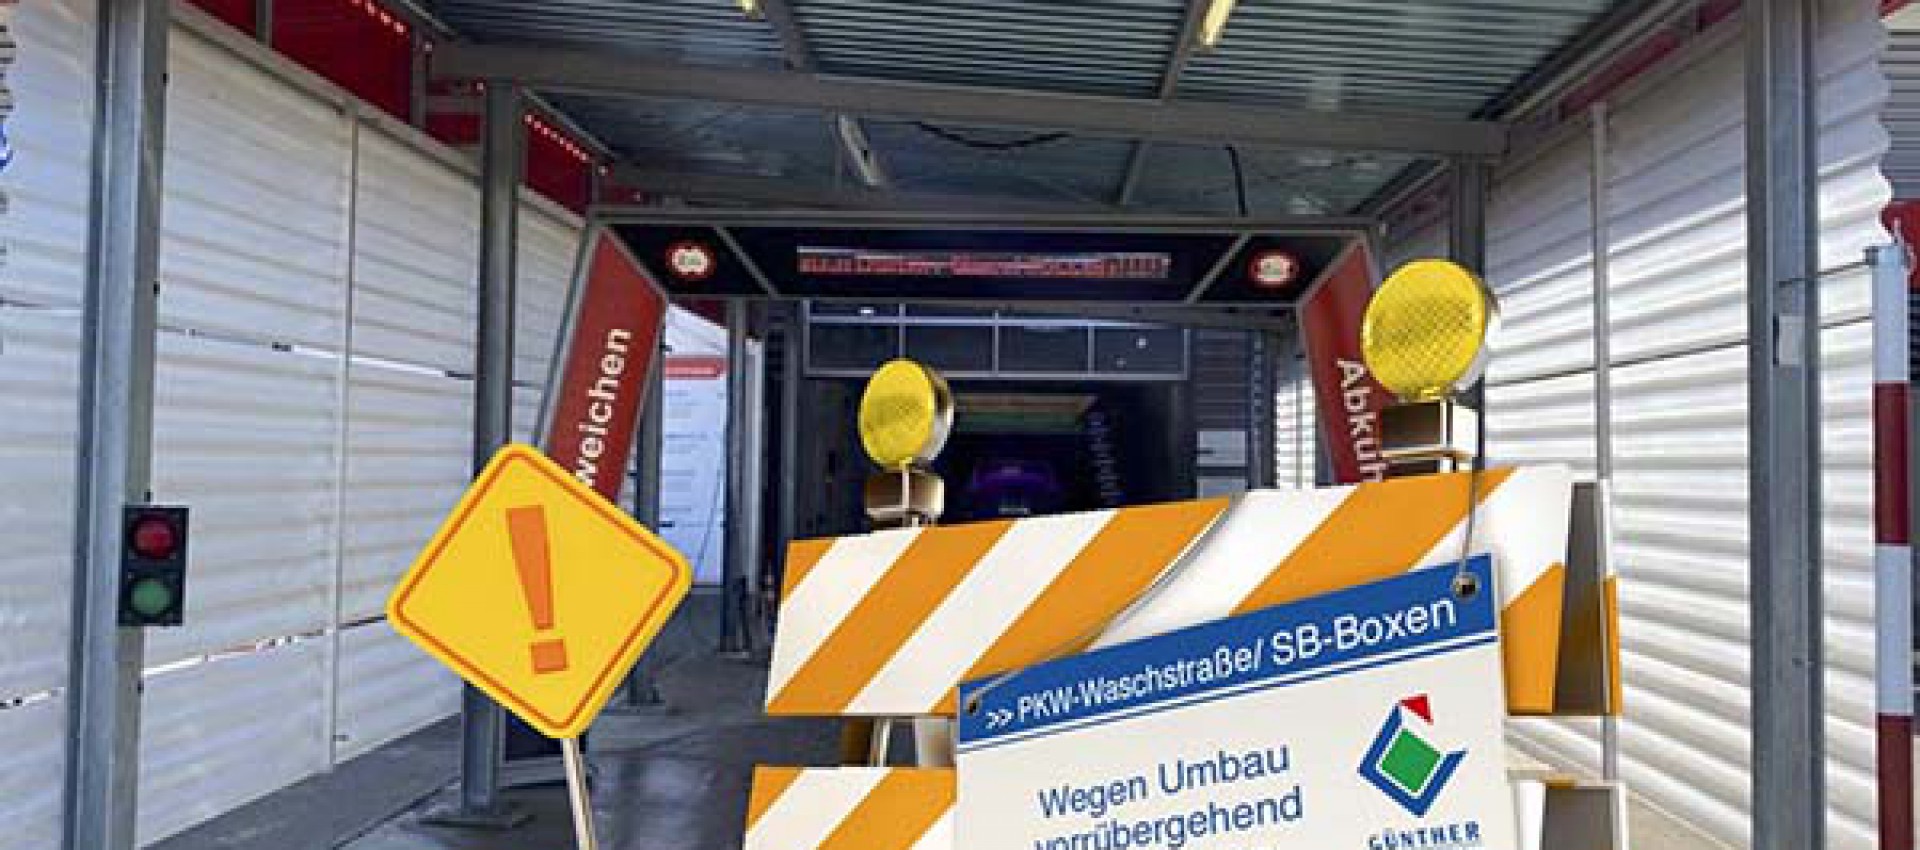 Ab dem 20.04. sind unsere PKW-Waschstraße und die SB-Waschboxen für 2 Wochen geschlossen.